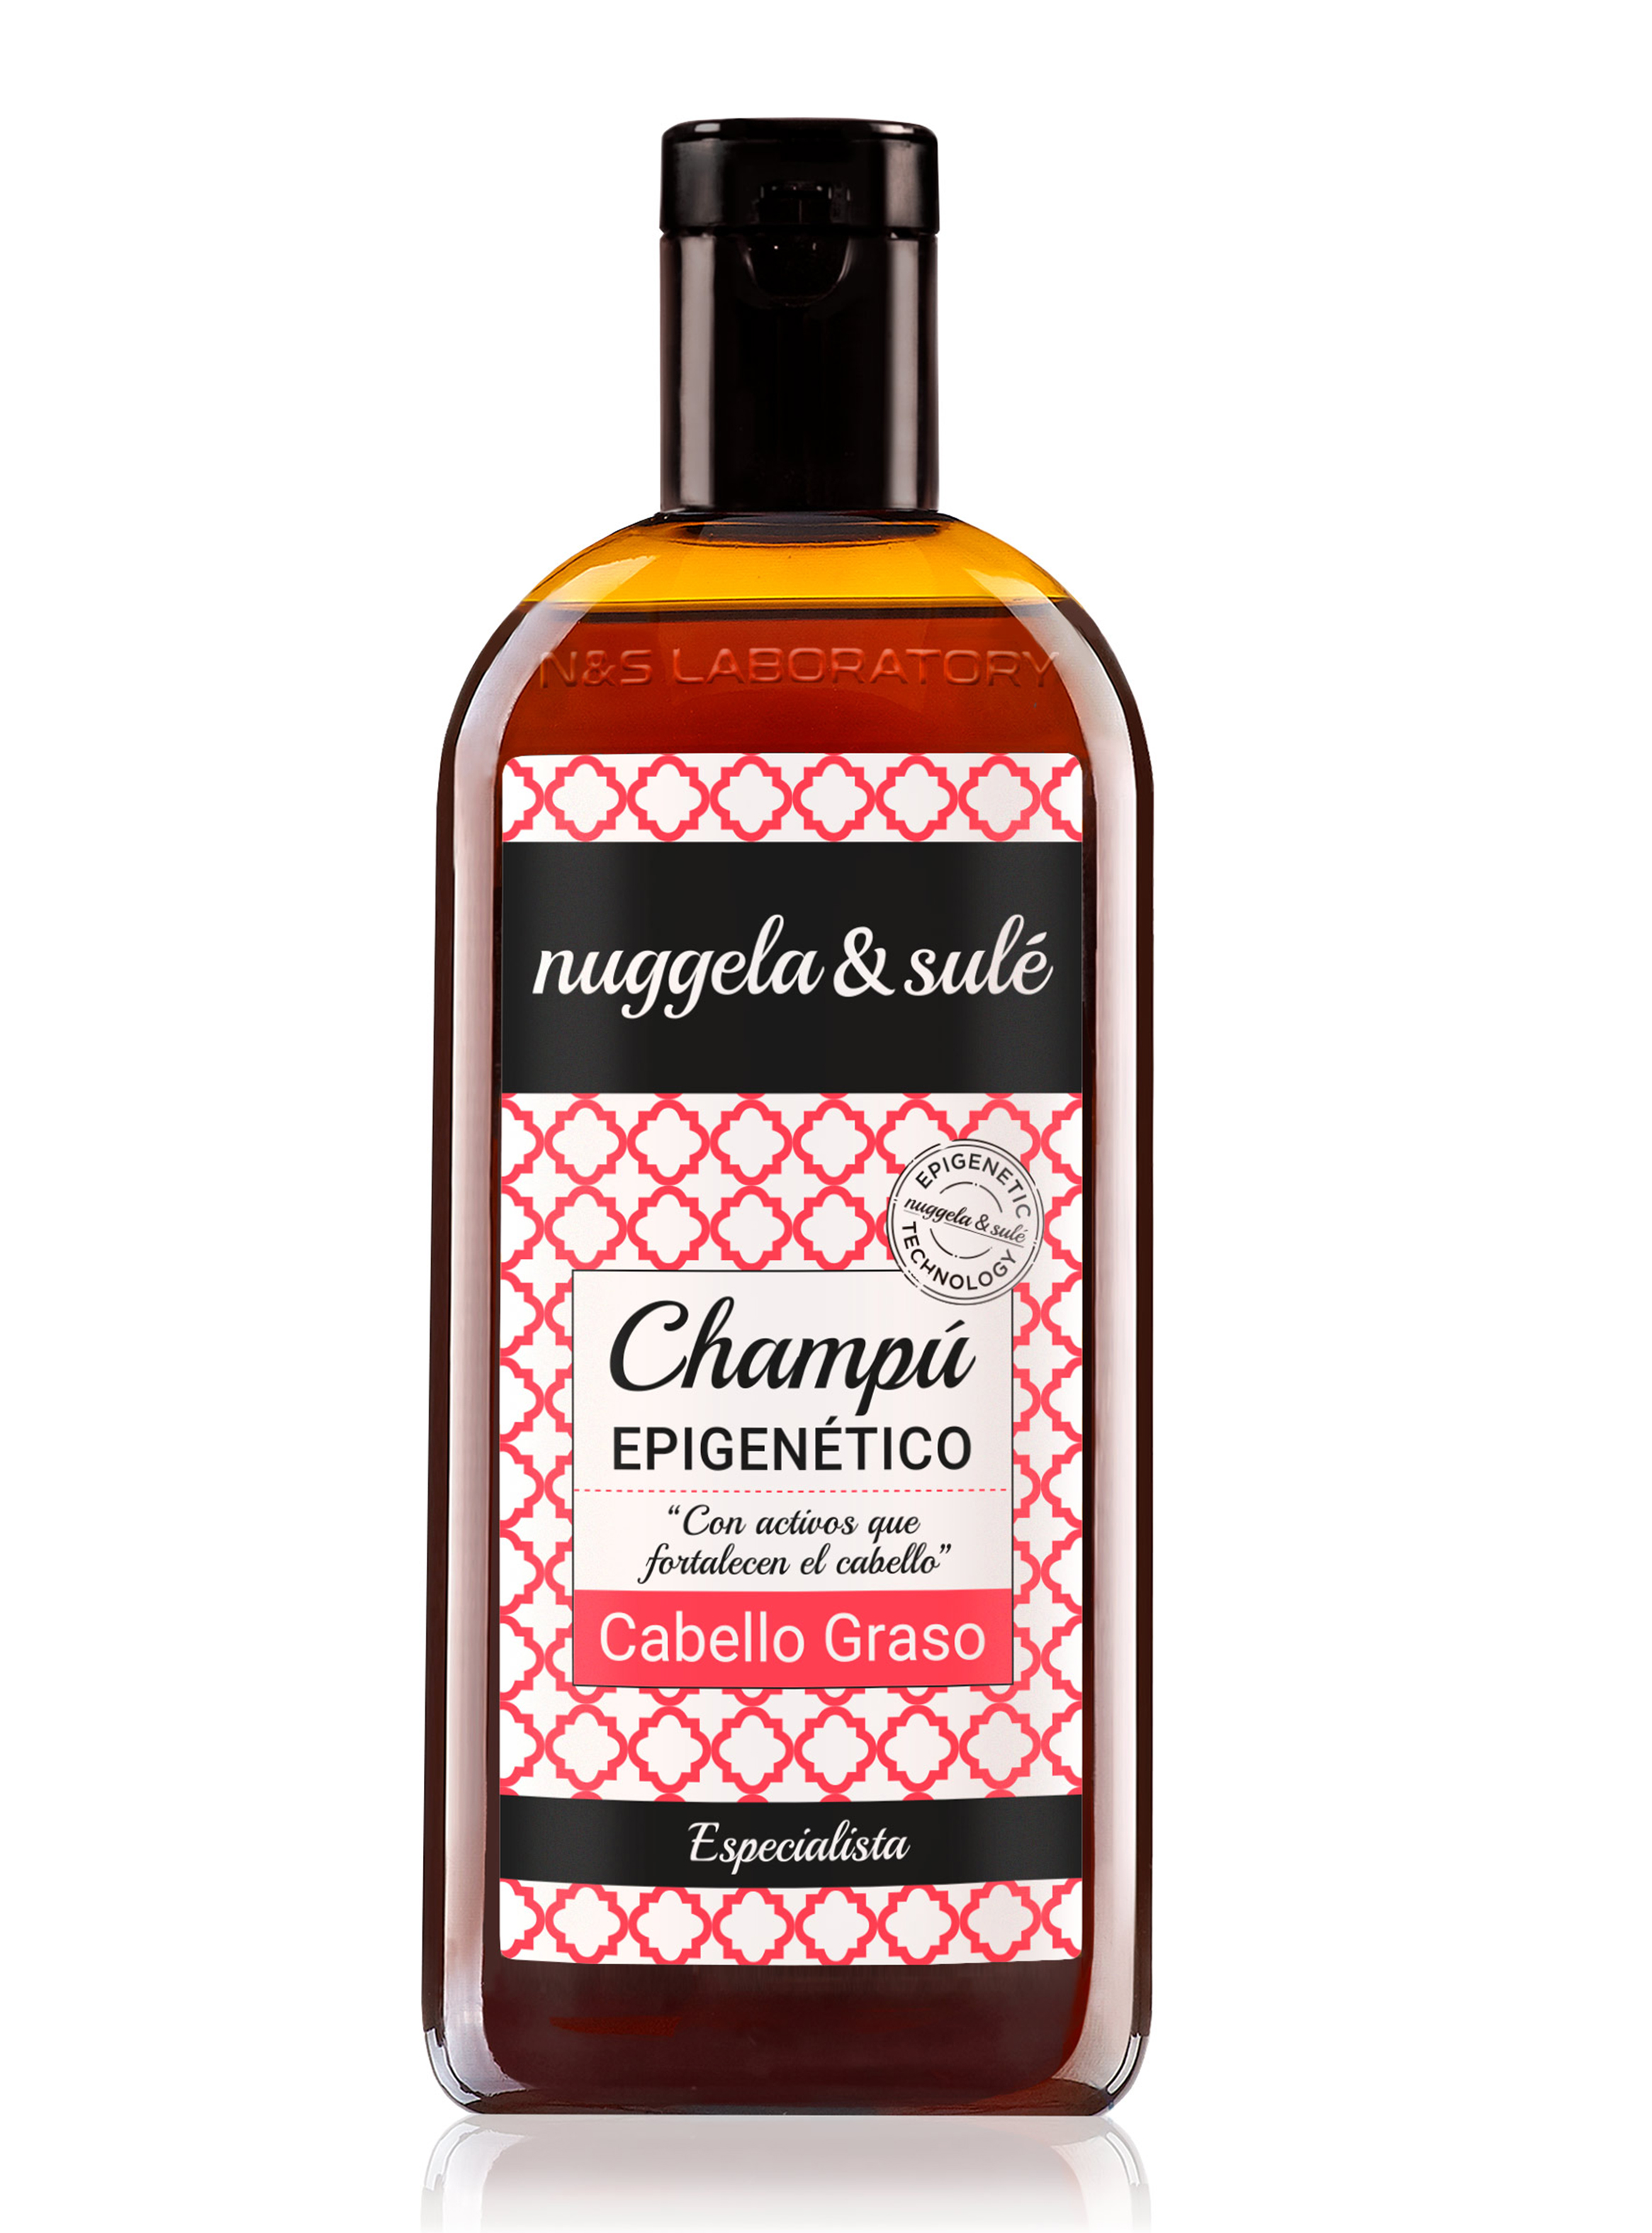 Shampoo Epigenético Cabello Graso 250 ml